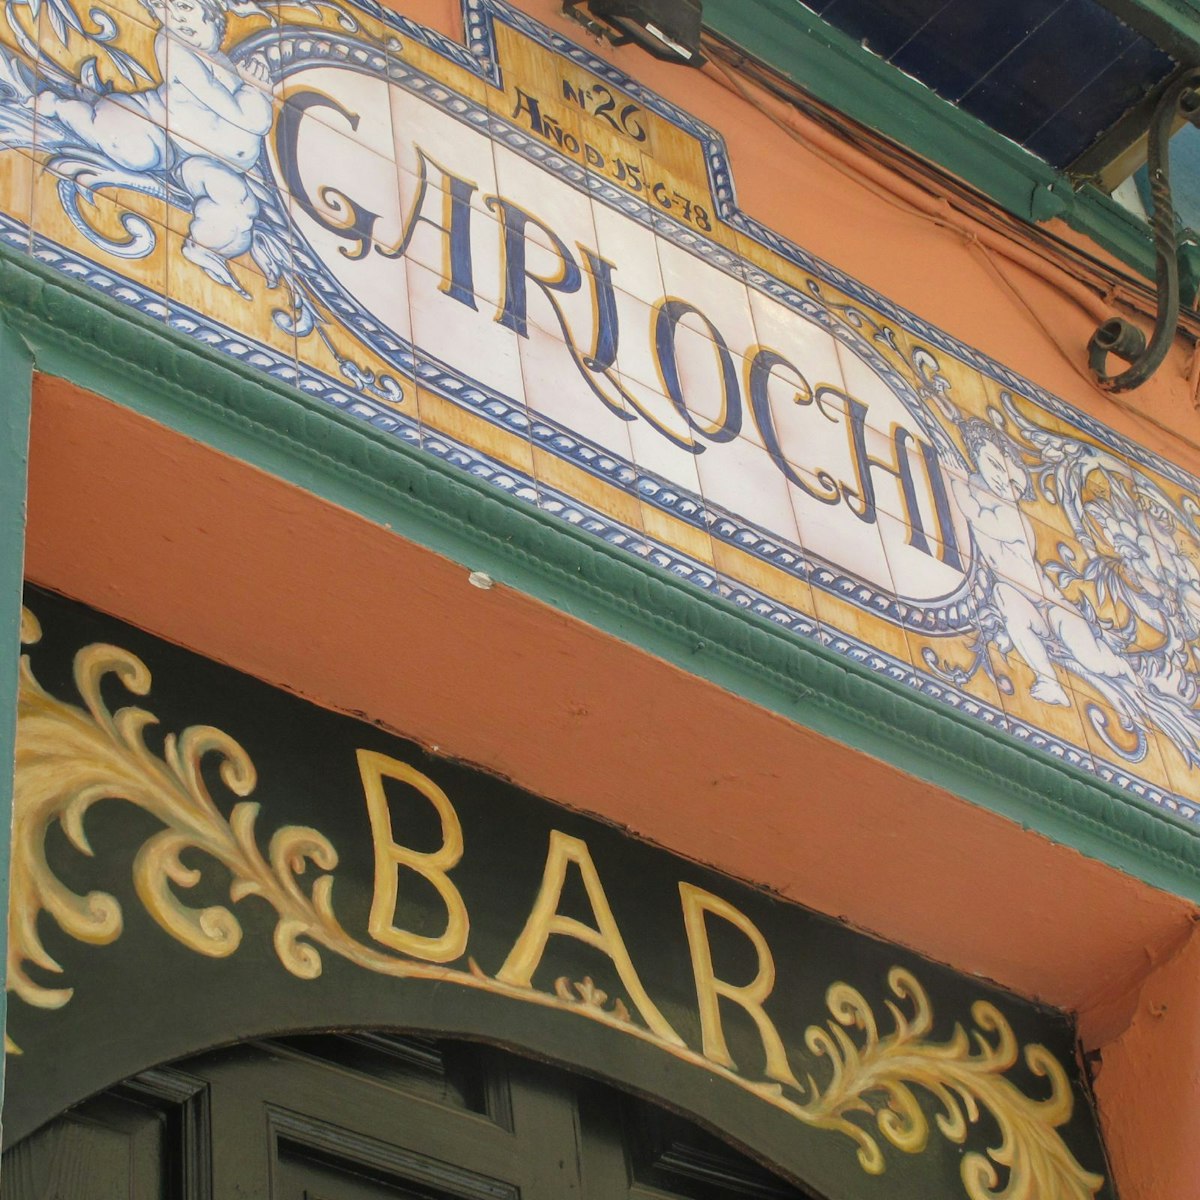 Garlochi bar sign over entrance in tiles.